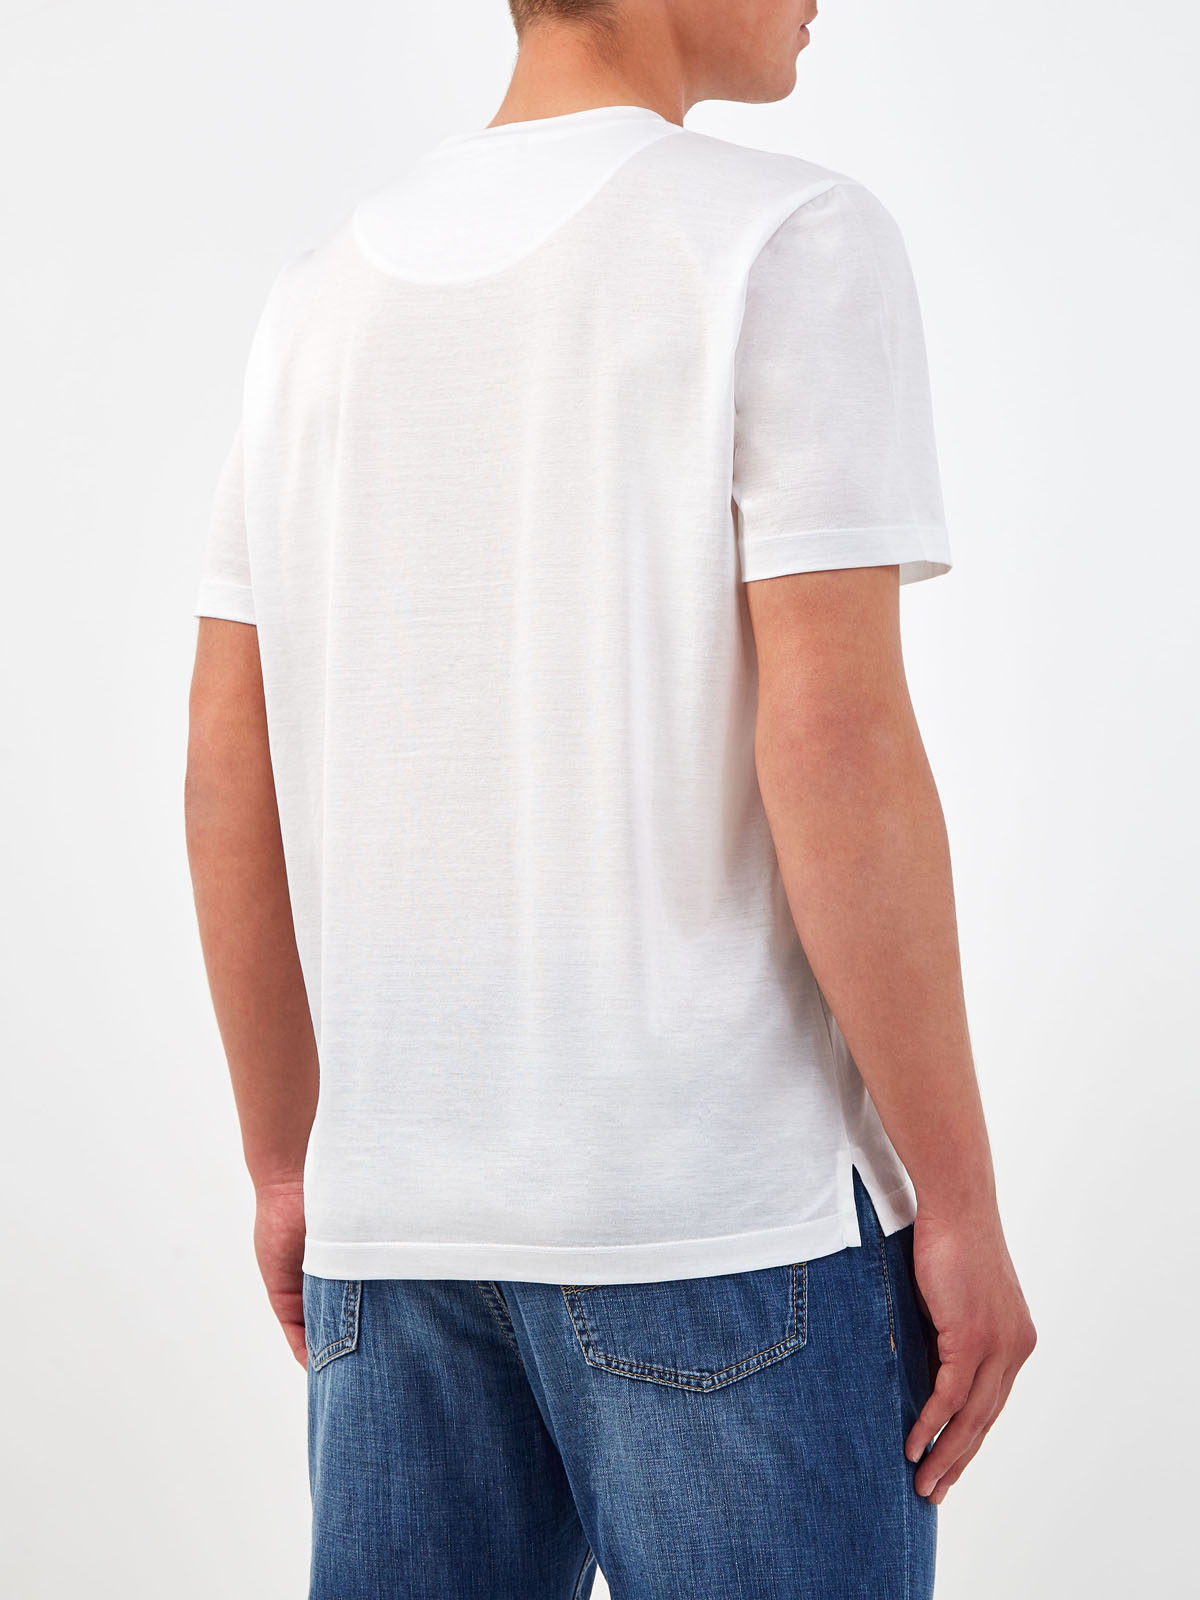 Хлопковая футболка с принтом и вышитым логотипом CANALI, цвет белый, размер 52;54;58;60;62;50 - фото 4